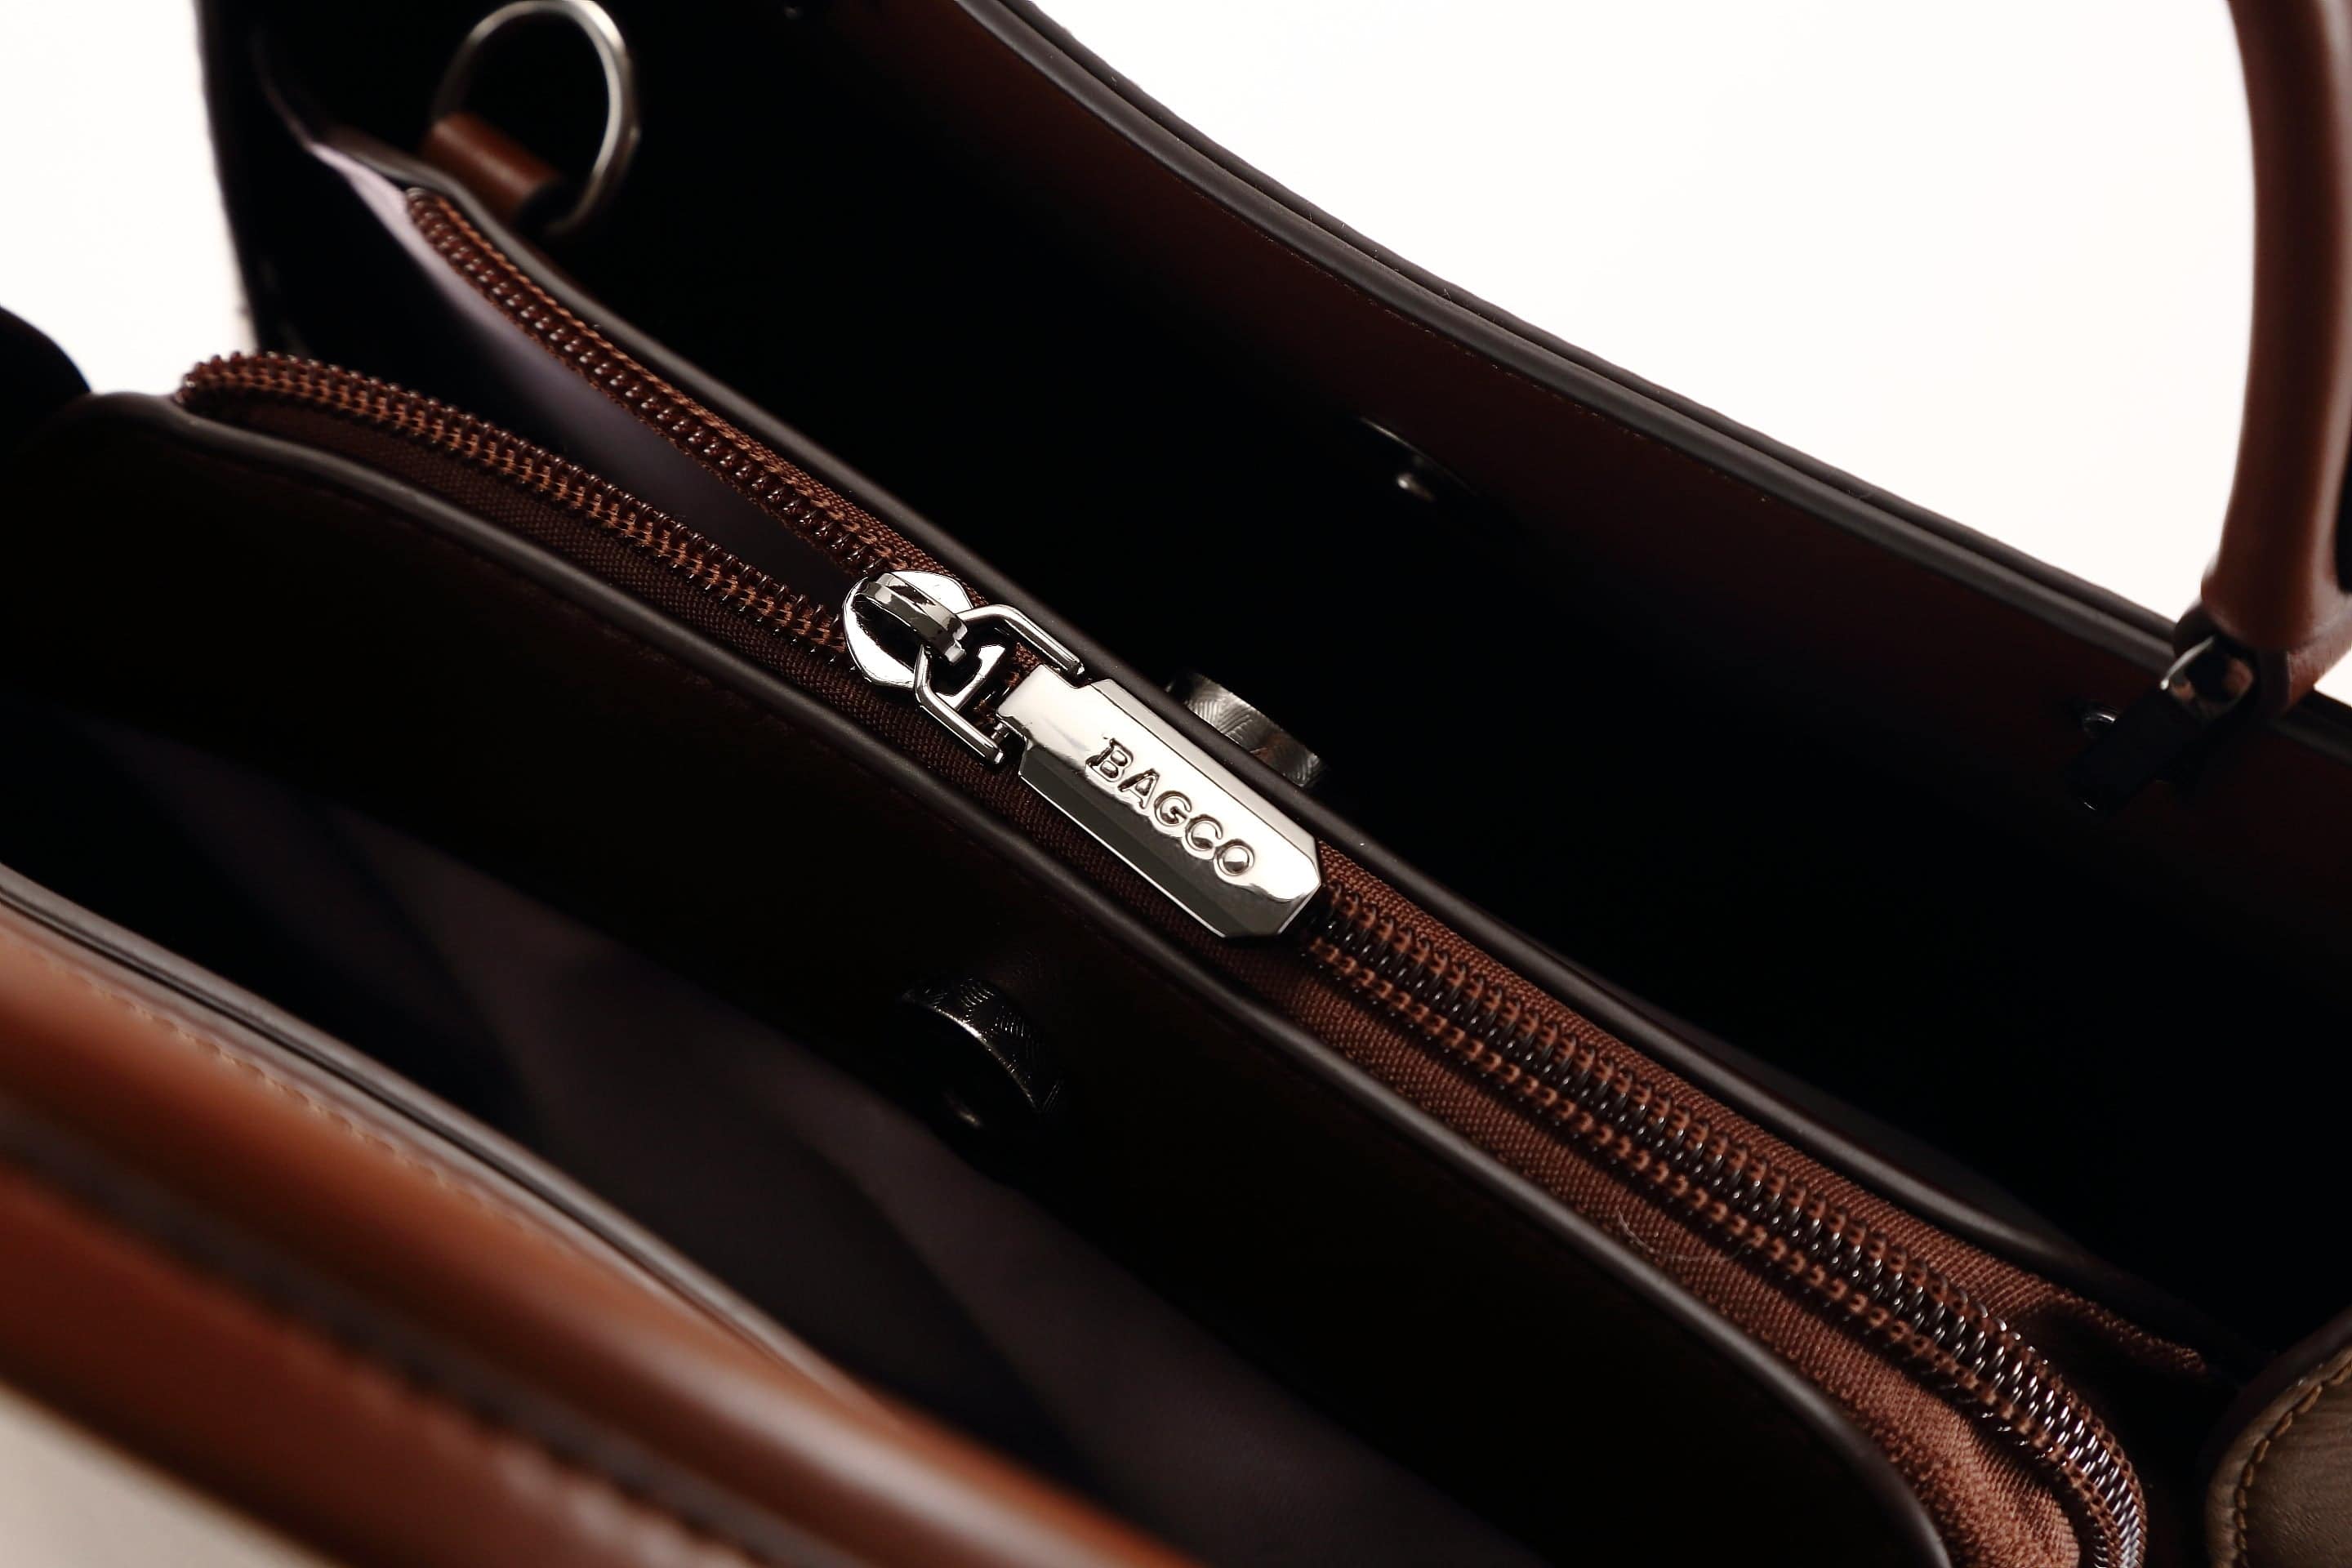 حقيبة يد نسائية باللون البنى مربعة الشكل كبيرة الحجم بيد وحزام طويل لحملها على الكتف - KSA